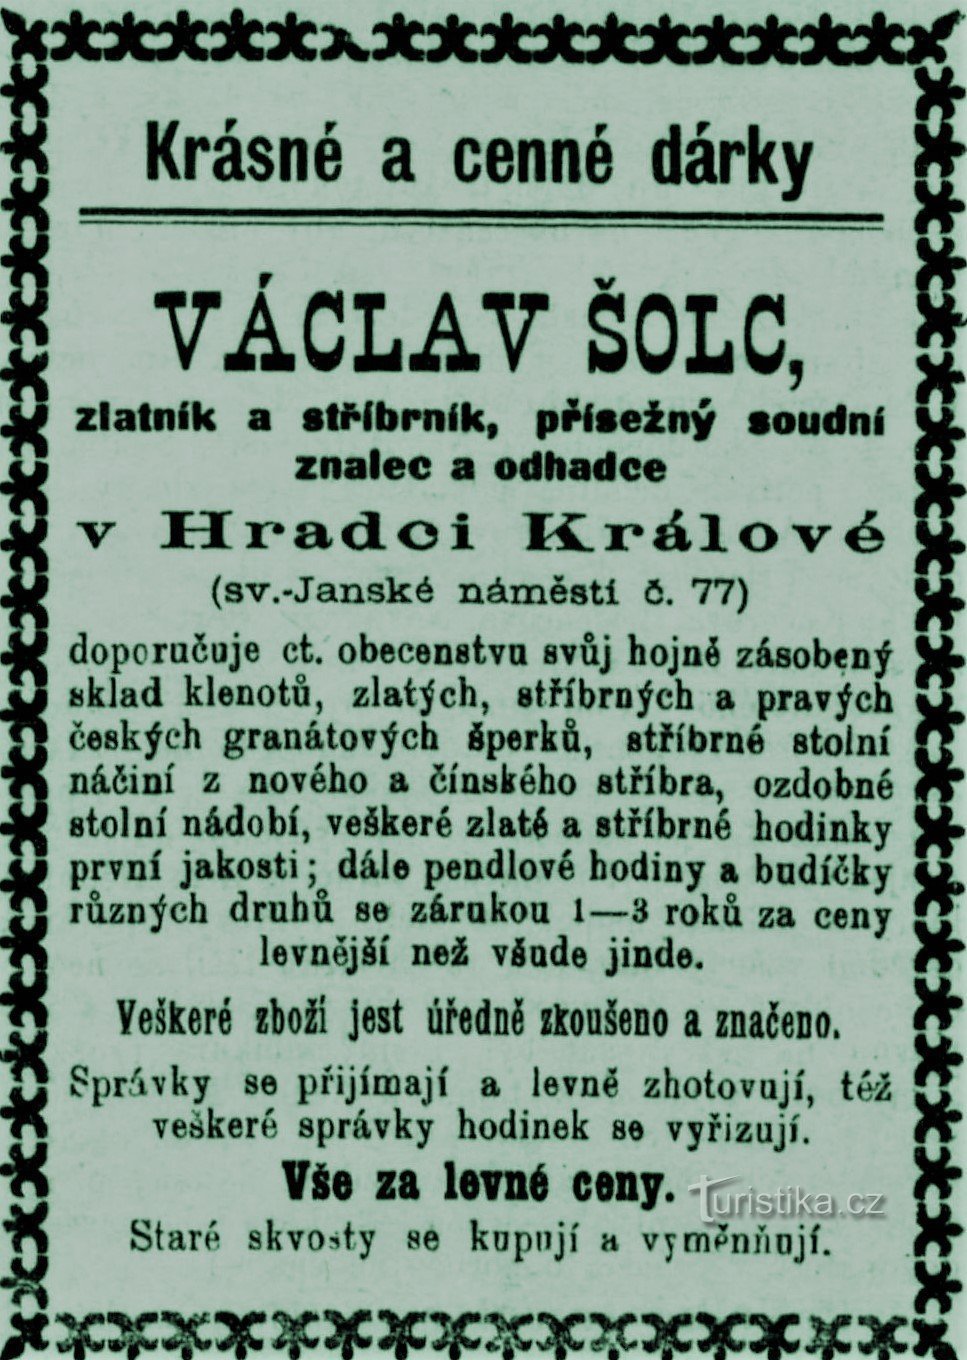 Современная реклама ювелира Вацлава Шолеца из Градца Кралове 1899 г.